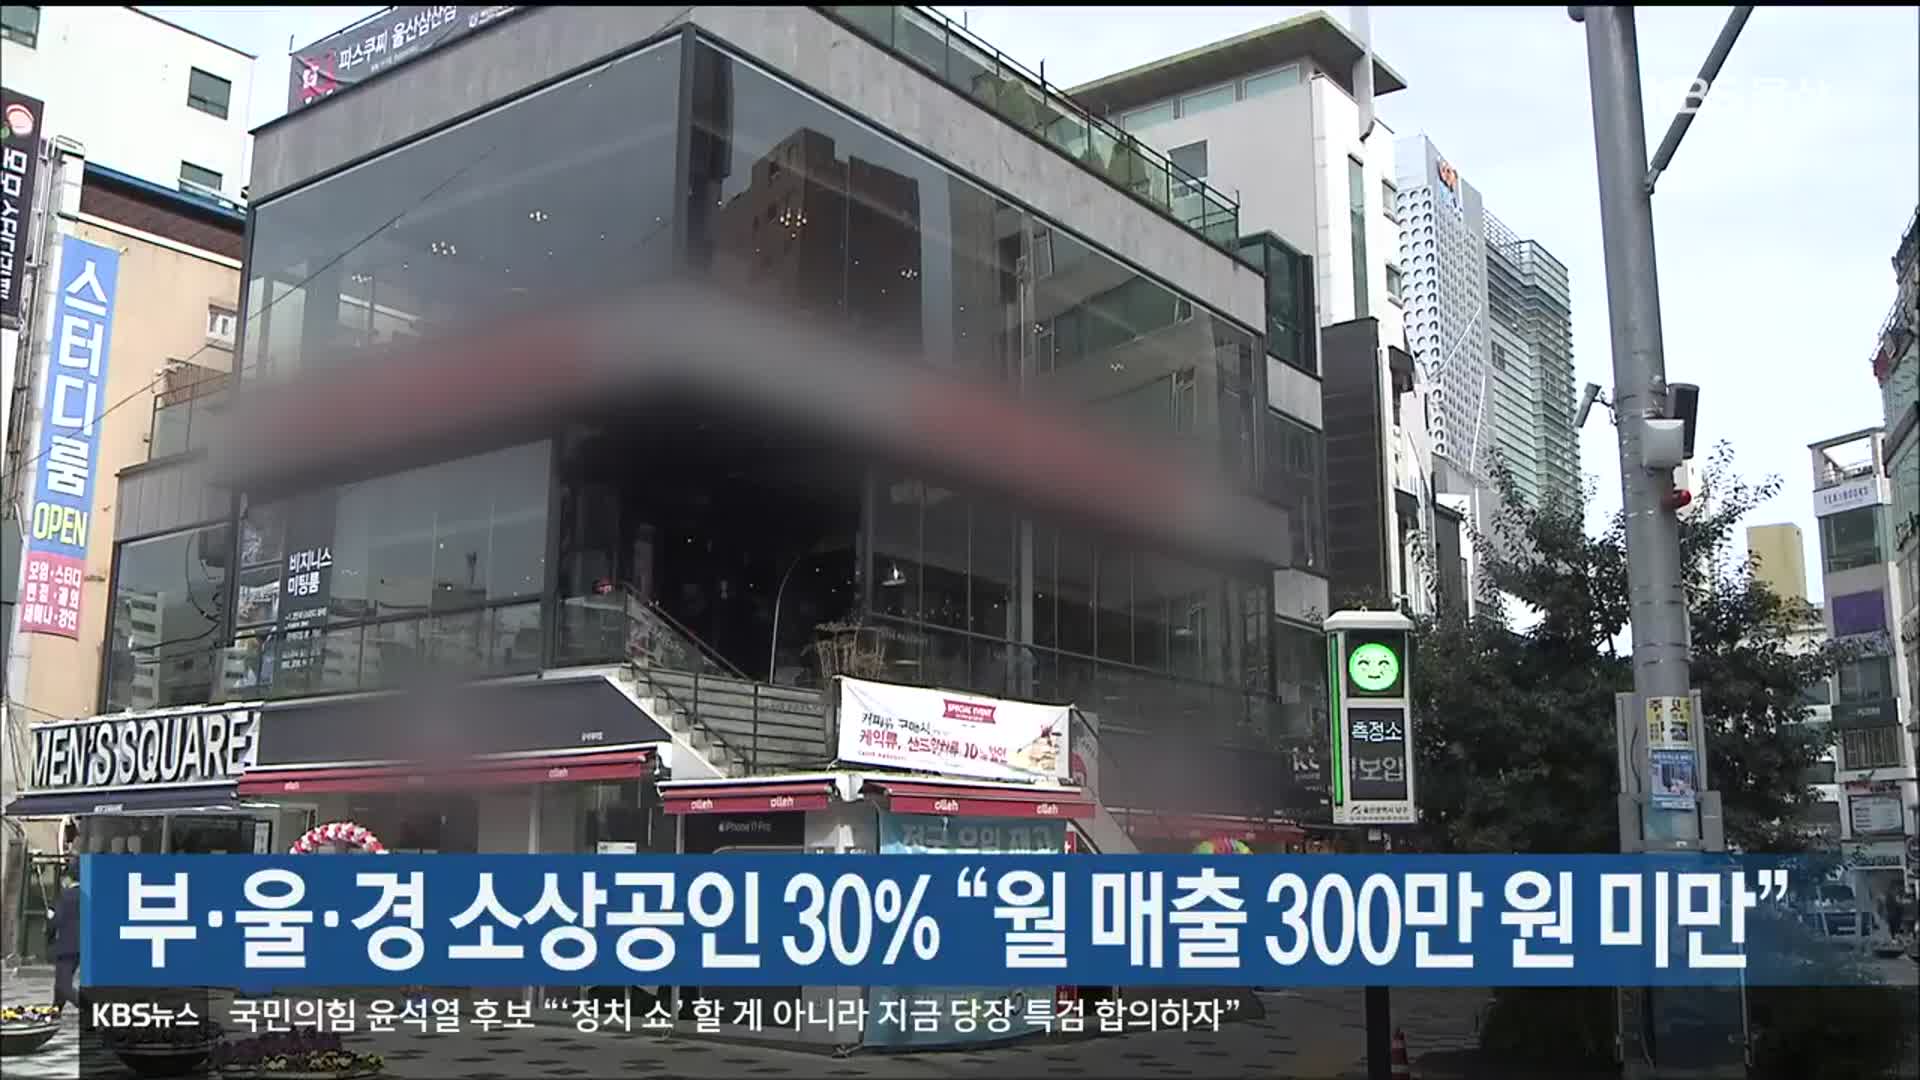 부·울·경 소상공인 30% “월 매출 300만 원 미만”